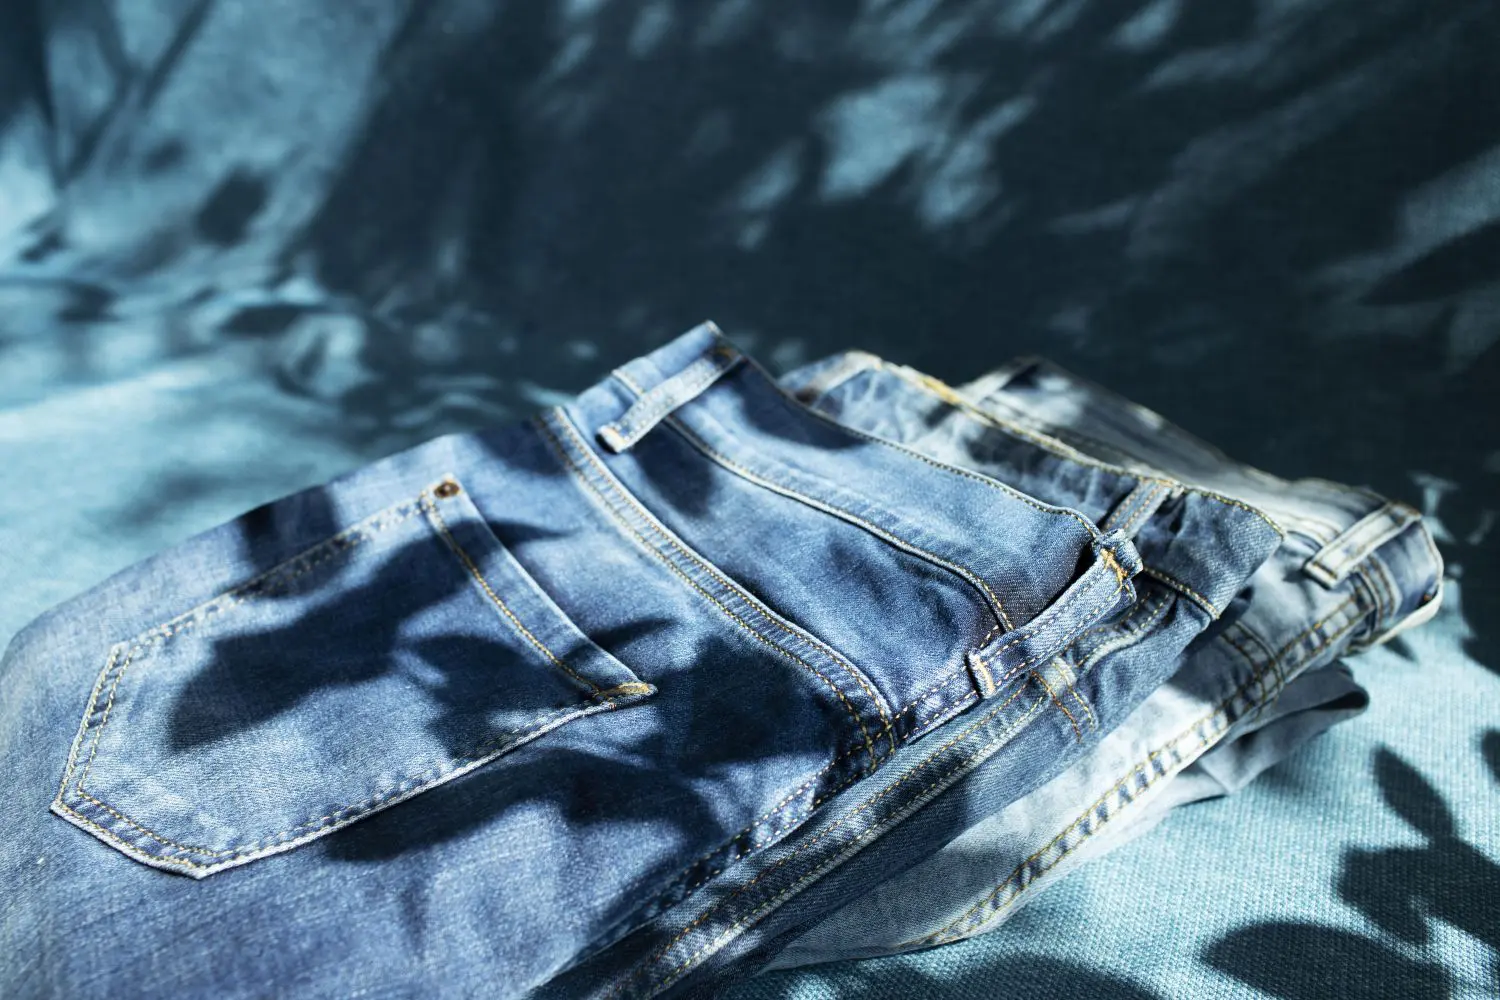 Pantalon largo 100% algodón , unisex, de estilo casual y mediterráneo, que  le da un tono moderno y desenfadado.